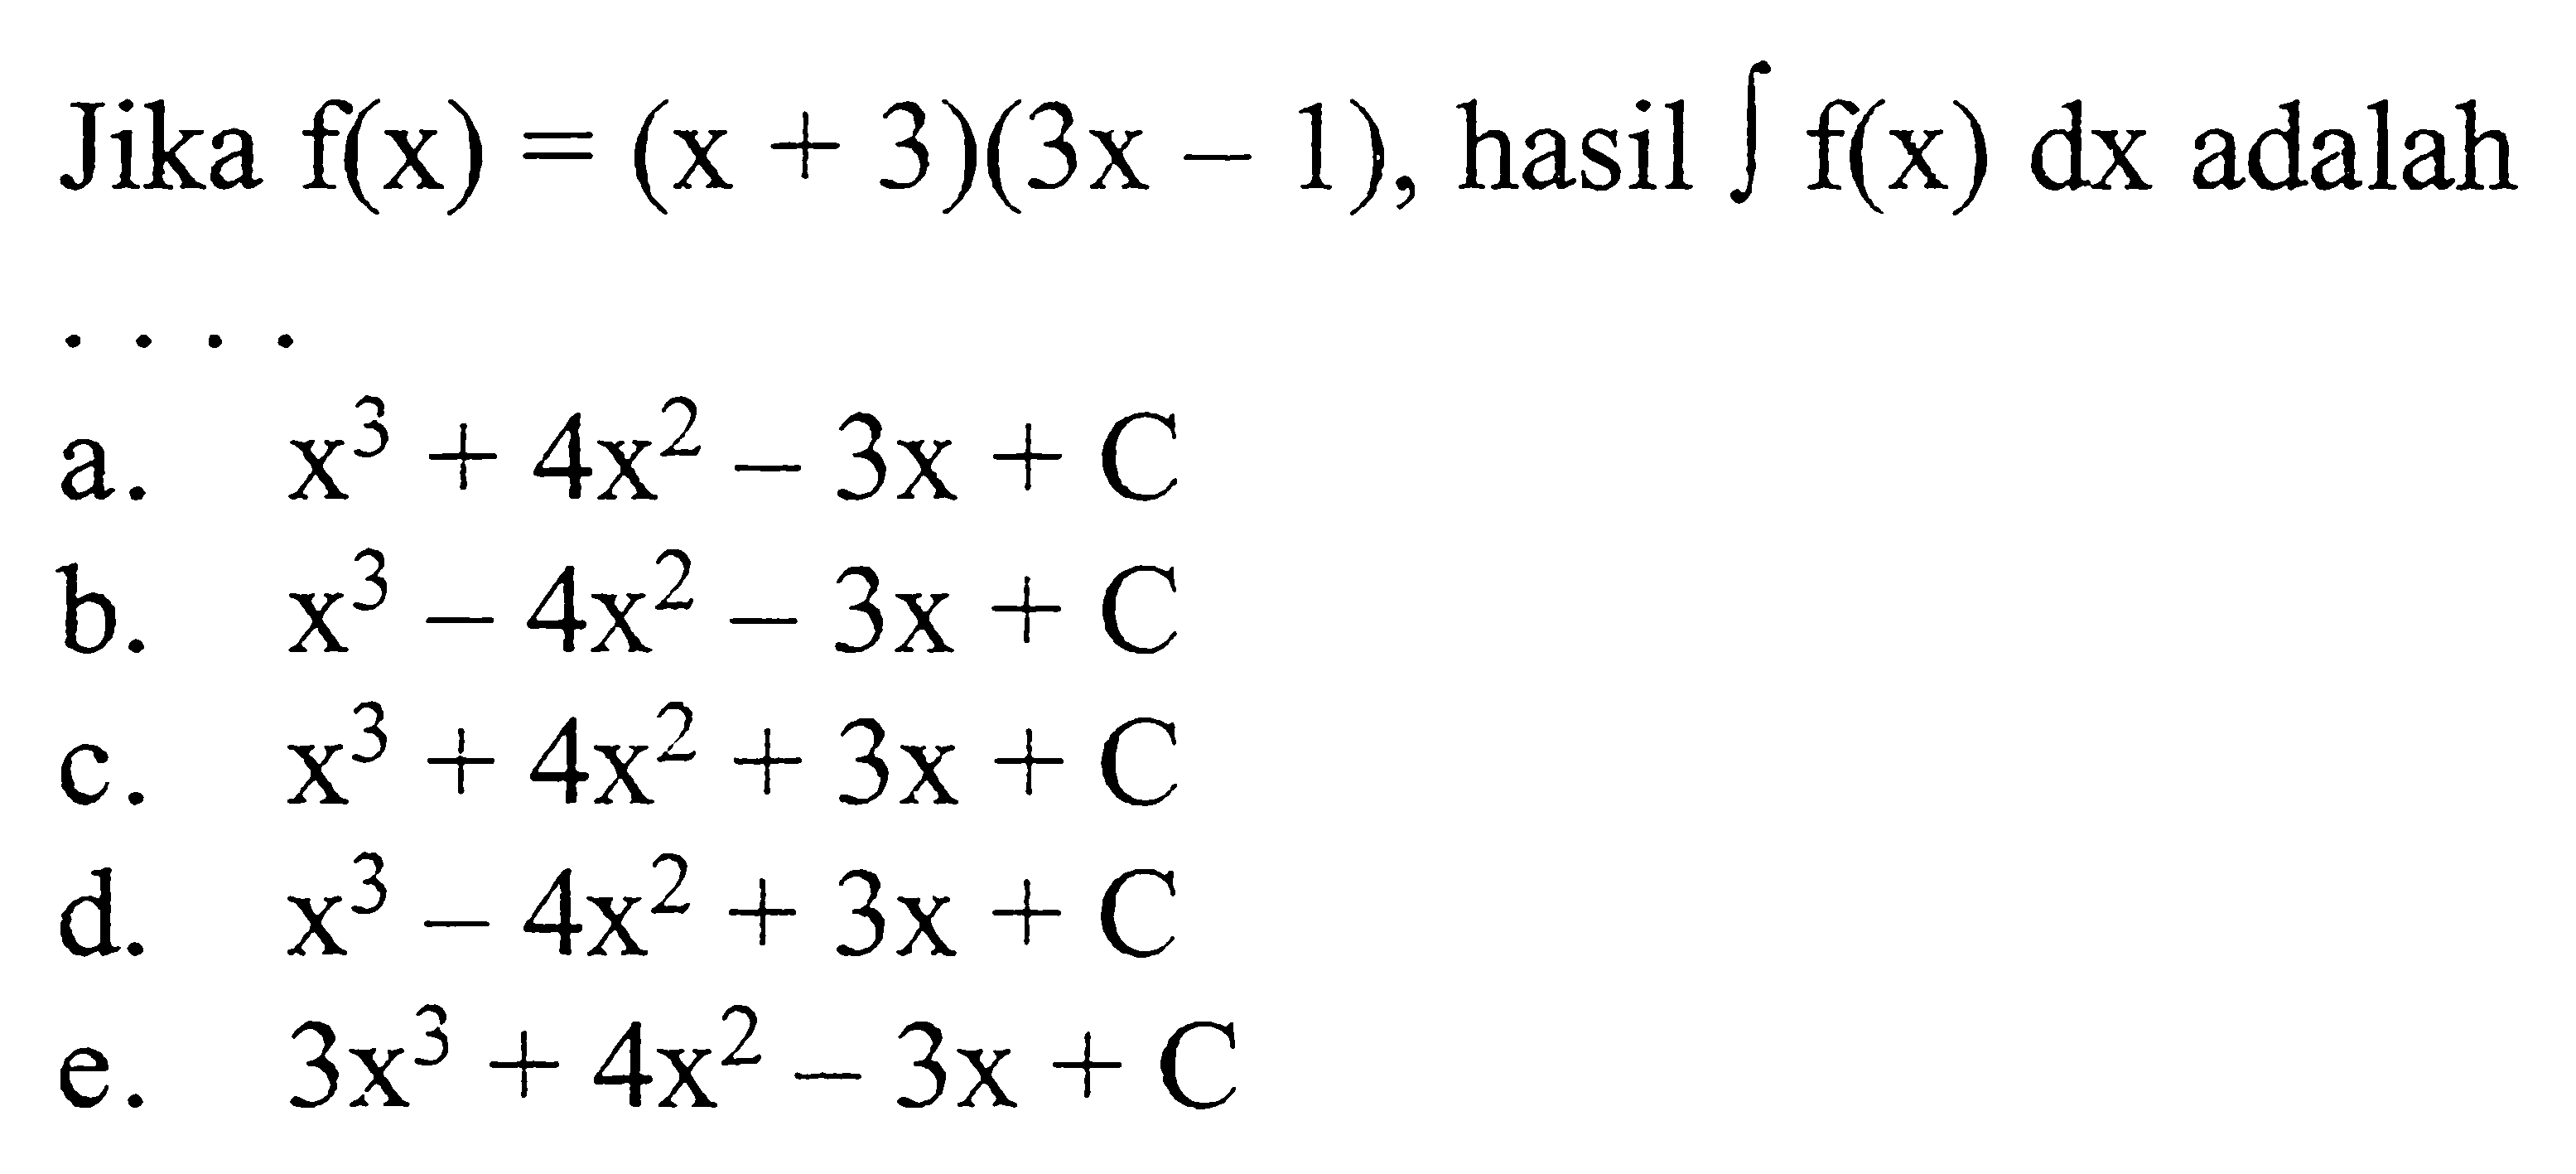 Jika f(x)=(x+3)(3x-1), hasil integral f(x) dx adalah